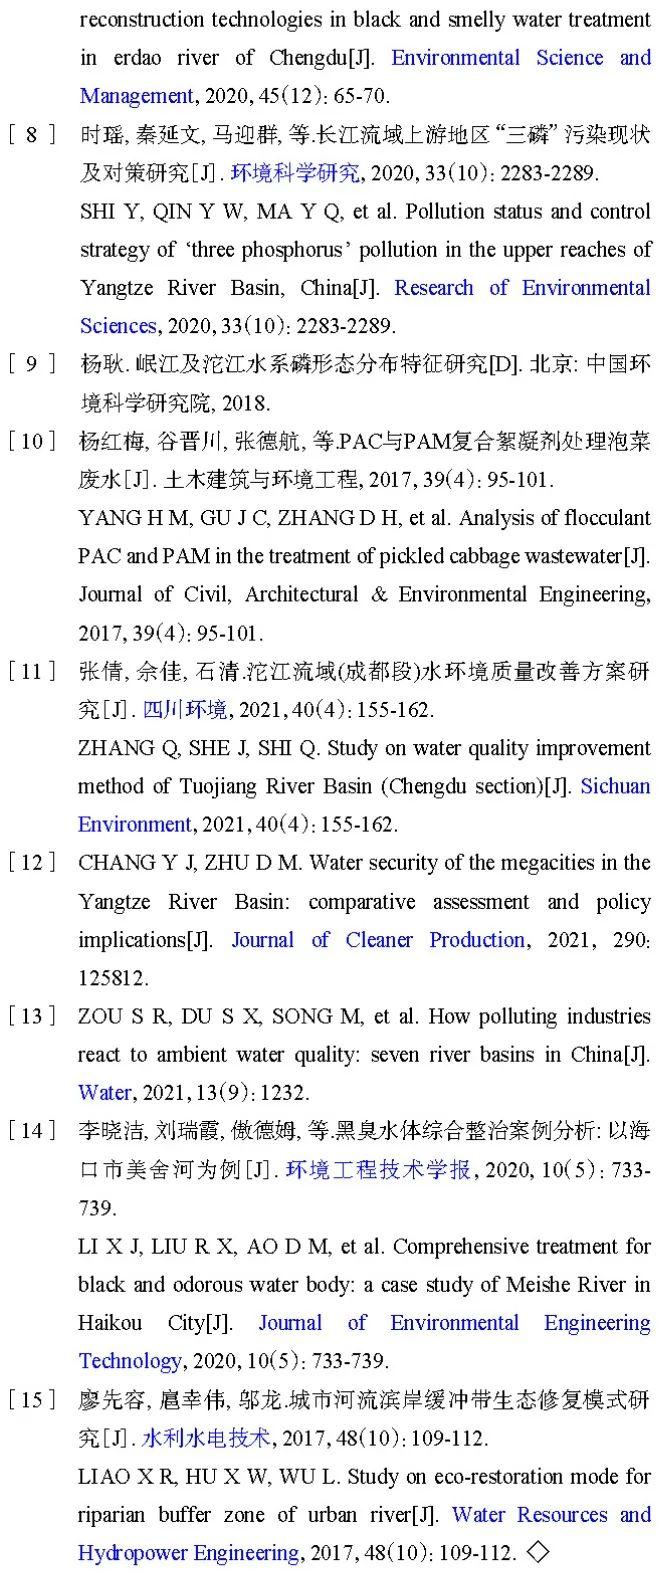 【技术交流】长江流域四川区域城市水生态环境问题解析及治理对策